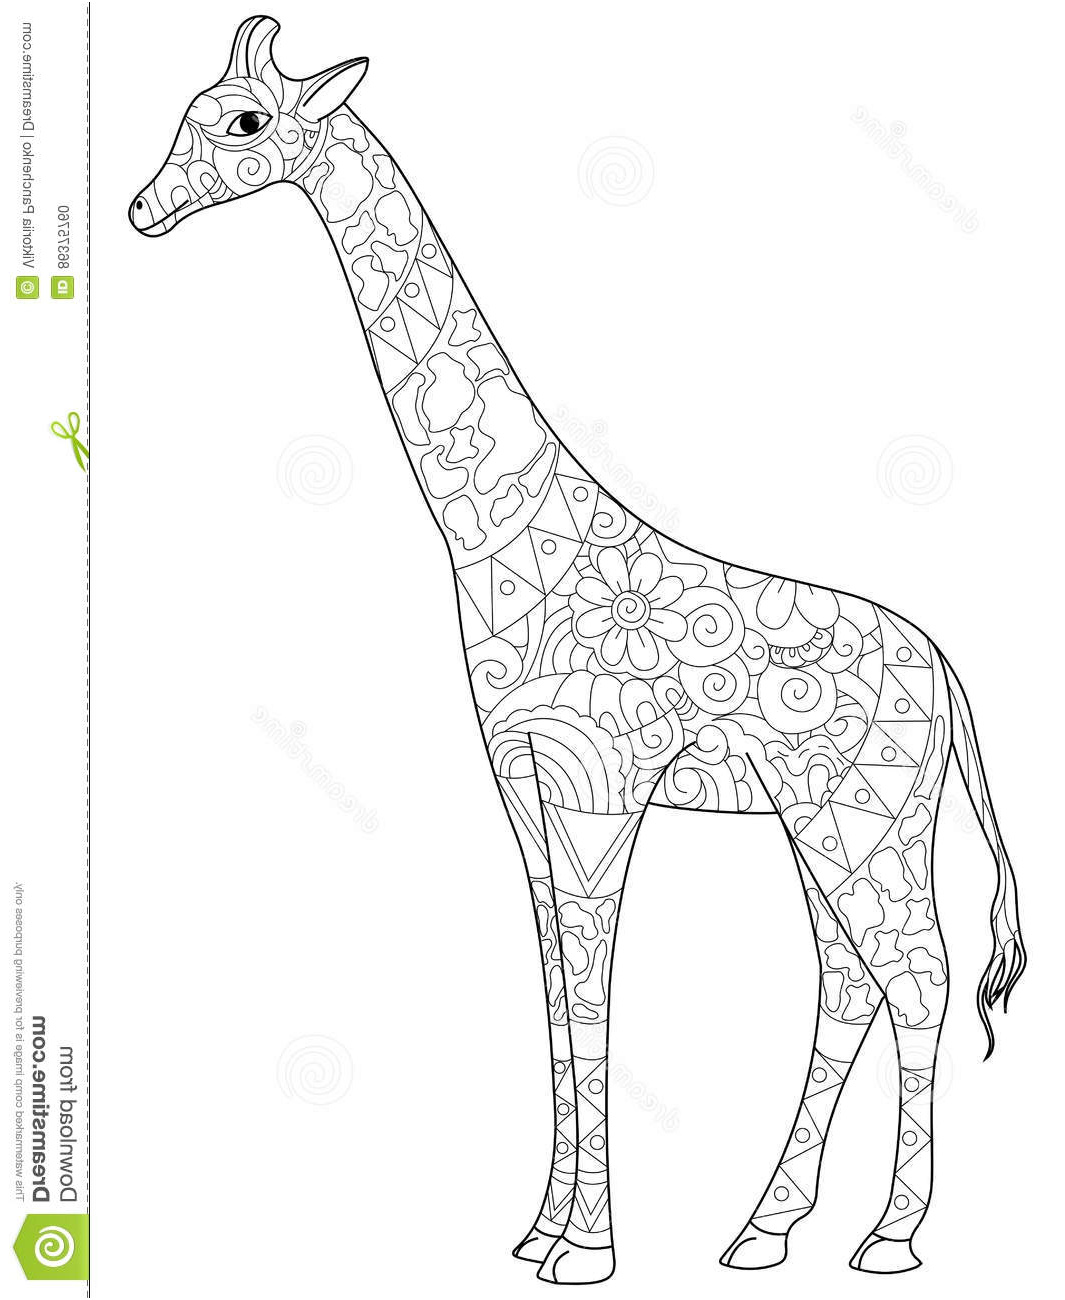 illustration stock livre de coloriage de girafe pour l illustration de vecteur d adultes image